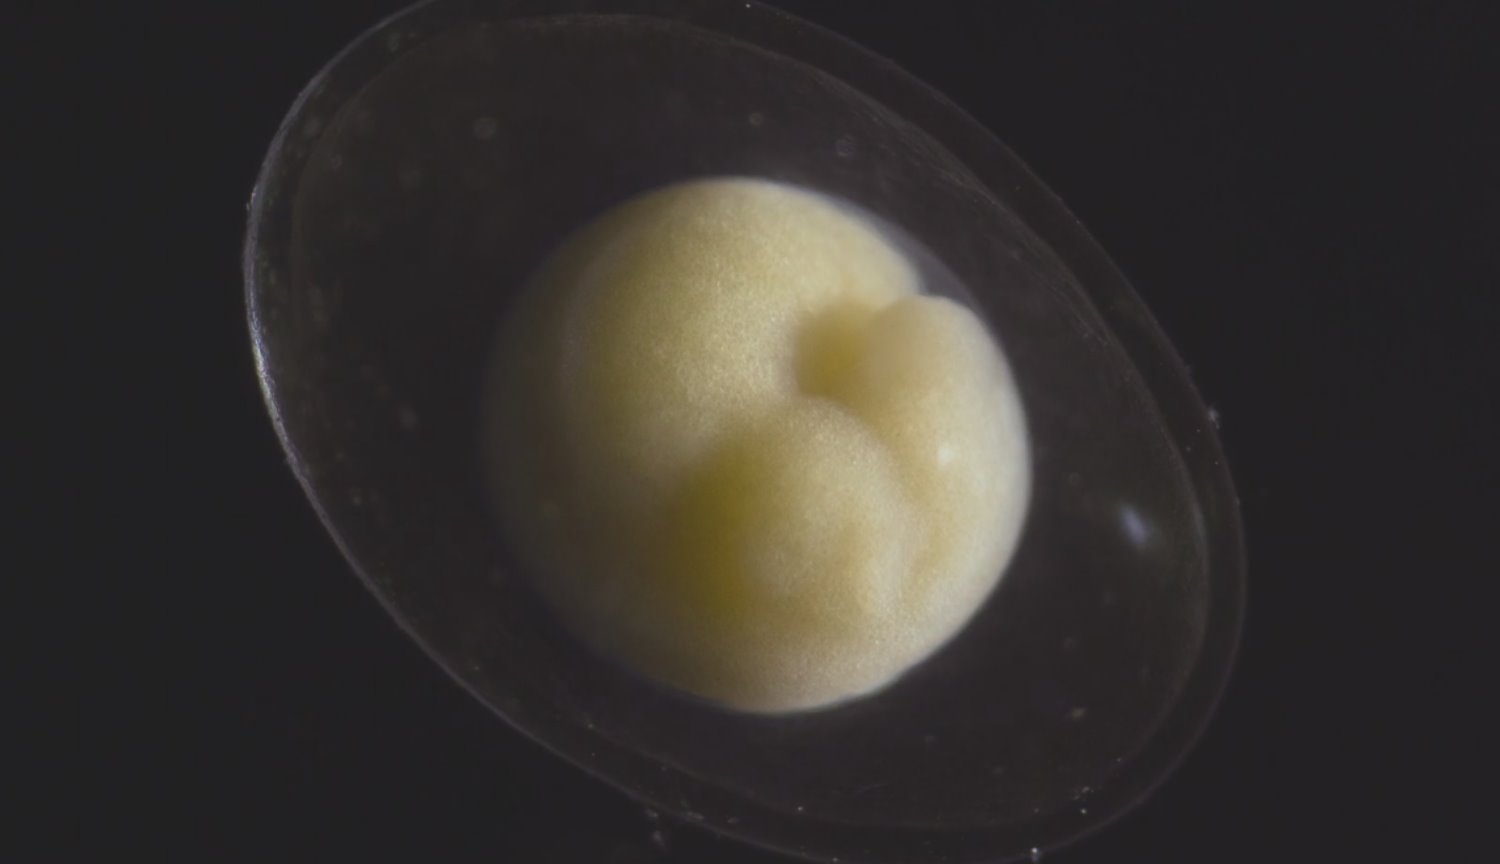 #video | Come un piccolo embrione trasformato in un organismo vivente?